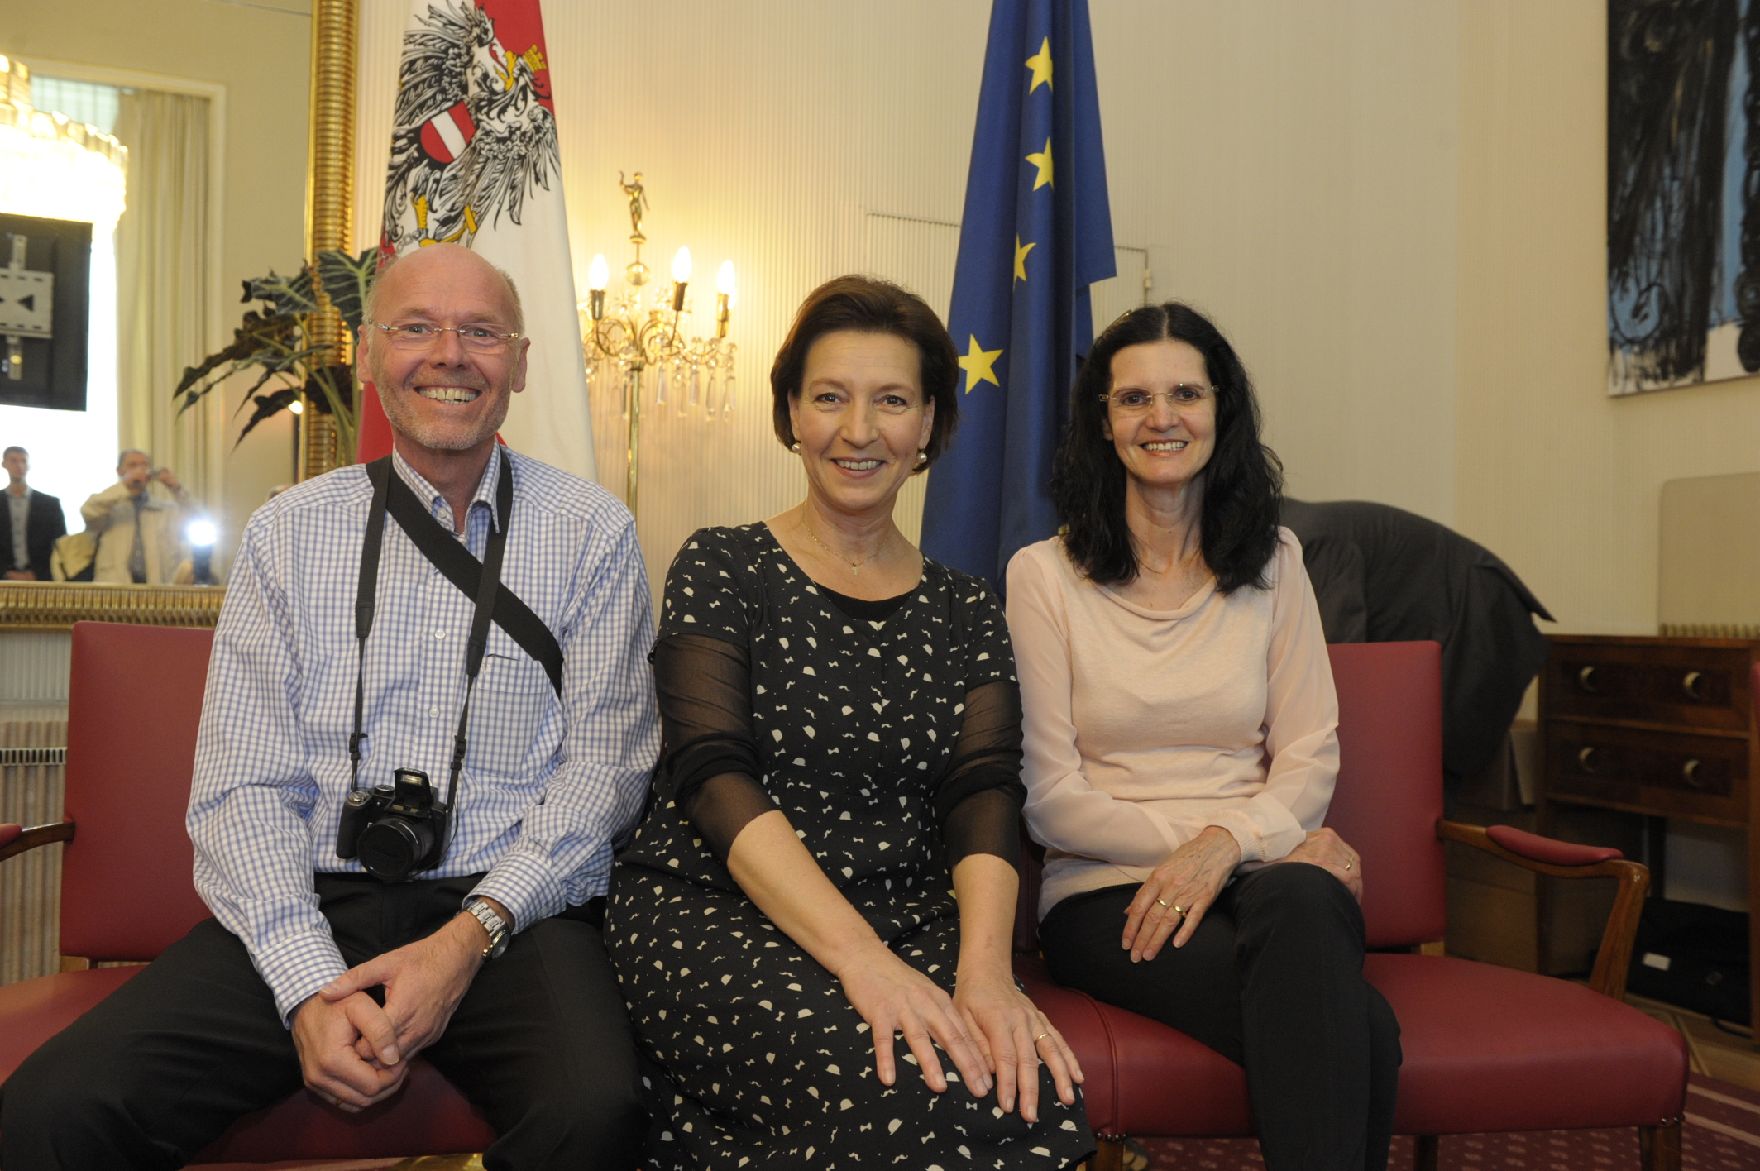 Am 26. Oktober 2013 empfing Frauenministerin Gabriele Heinisch-Hosek im Rahmen des Nationalfeiertages Besucherinnen und Besucher im Bundeskanzleramt.